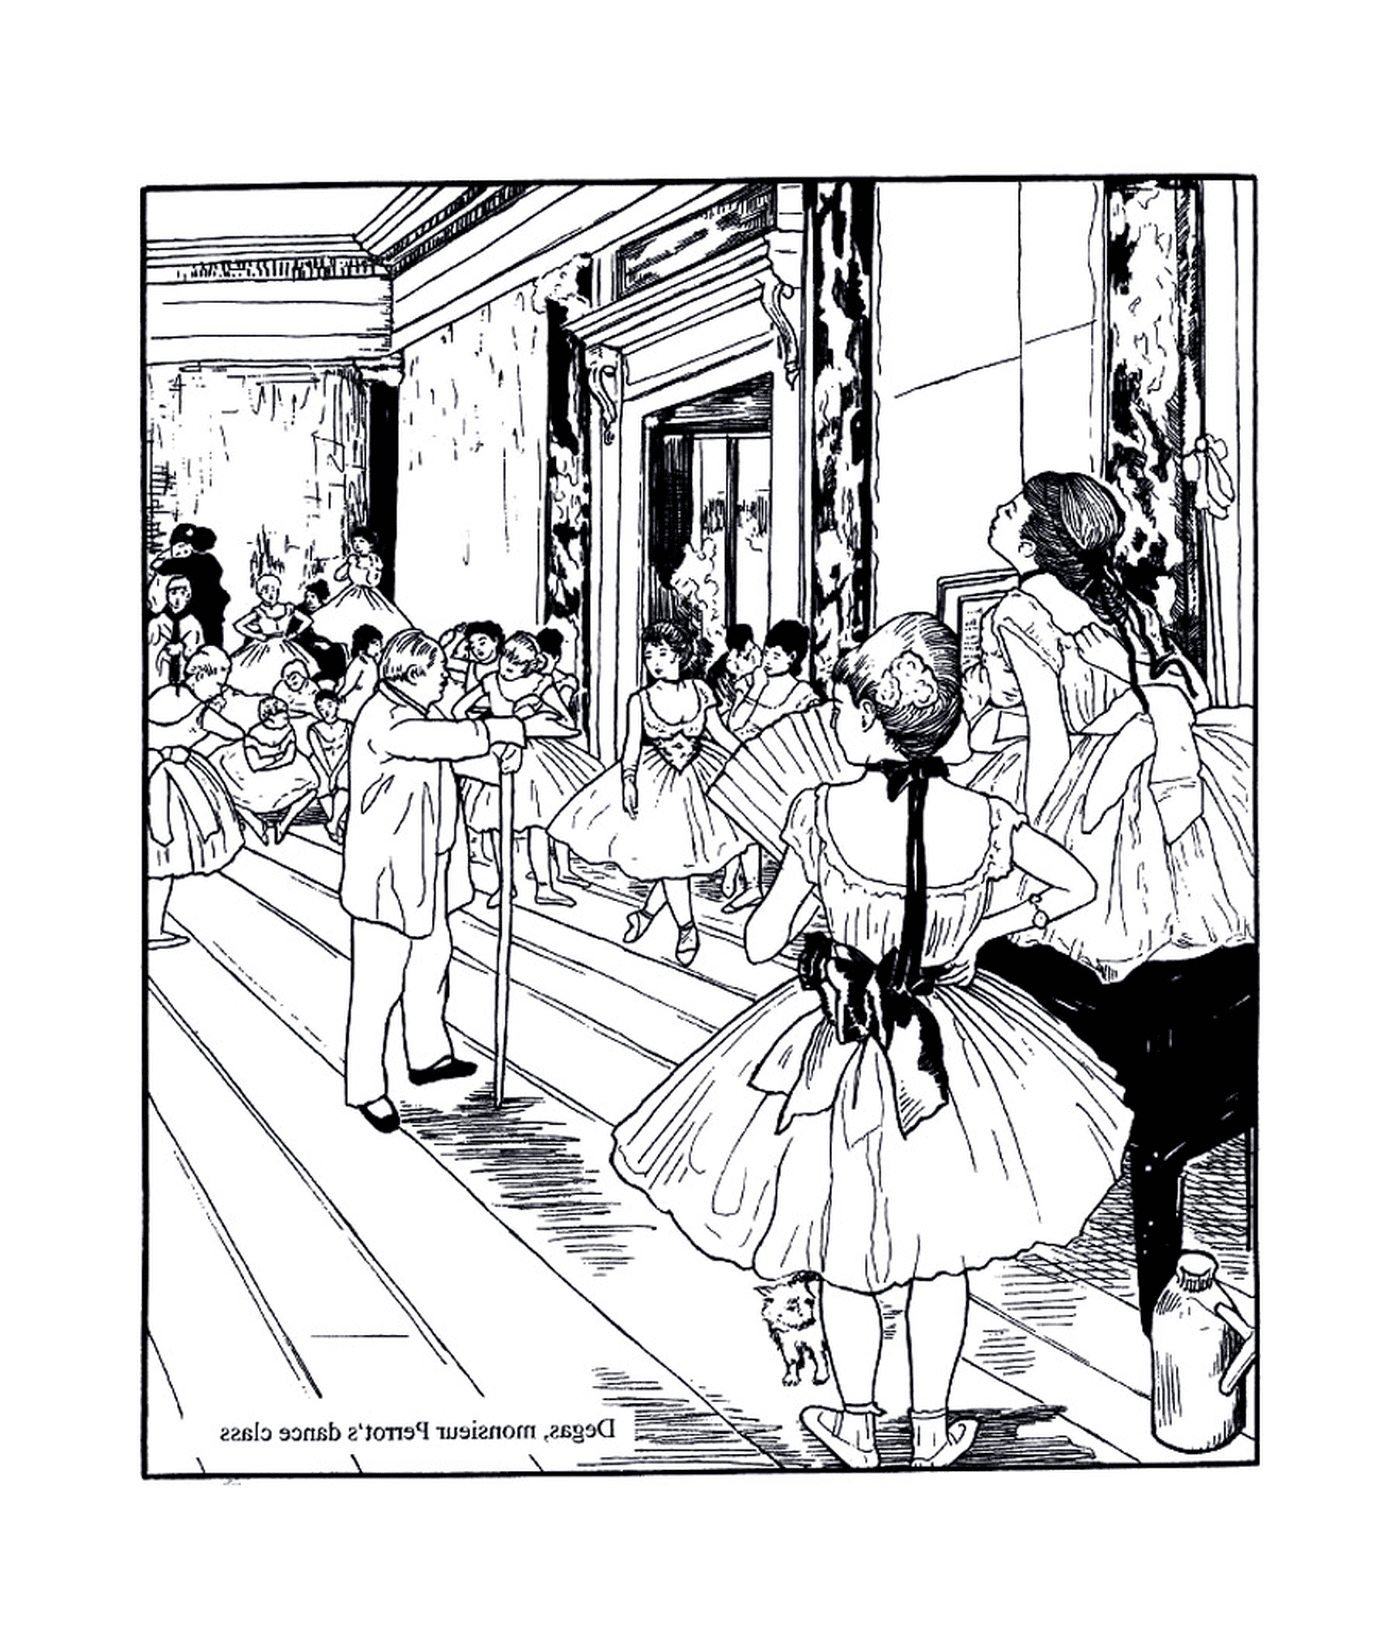  un grupo de personas de pie en una habitación según Degas 